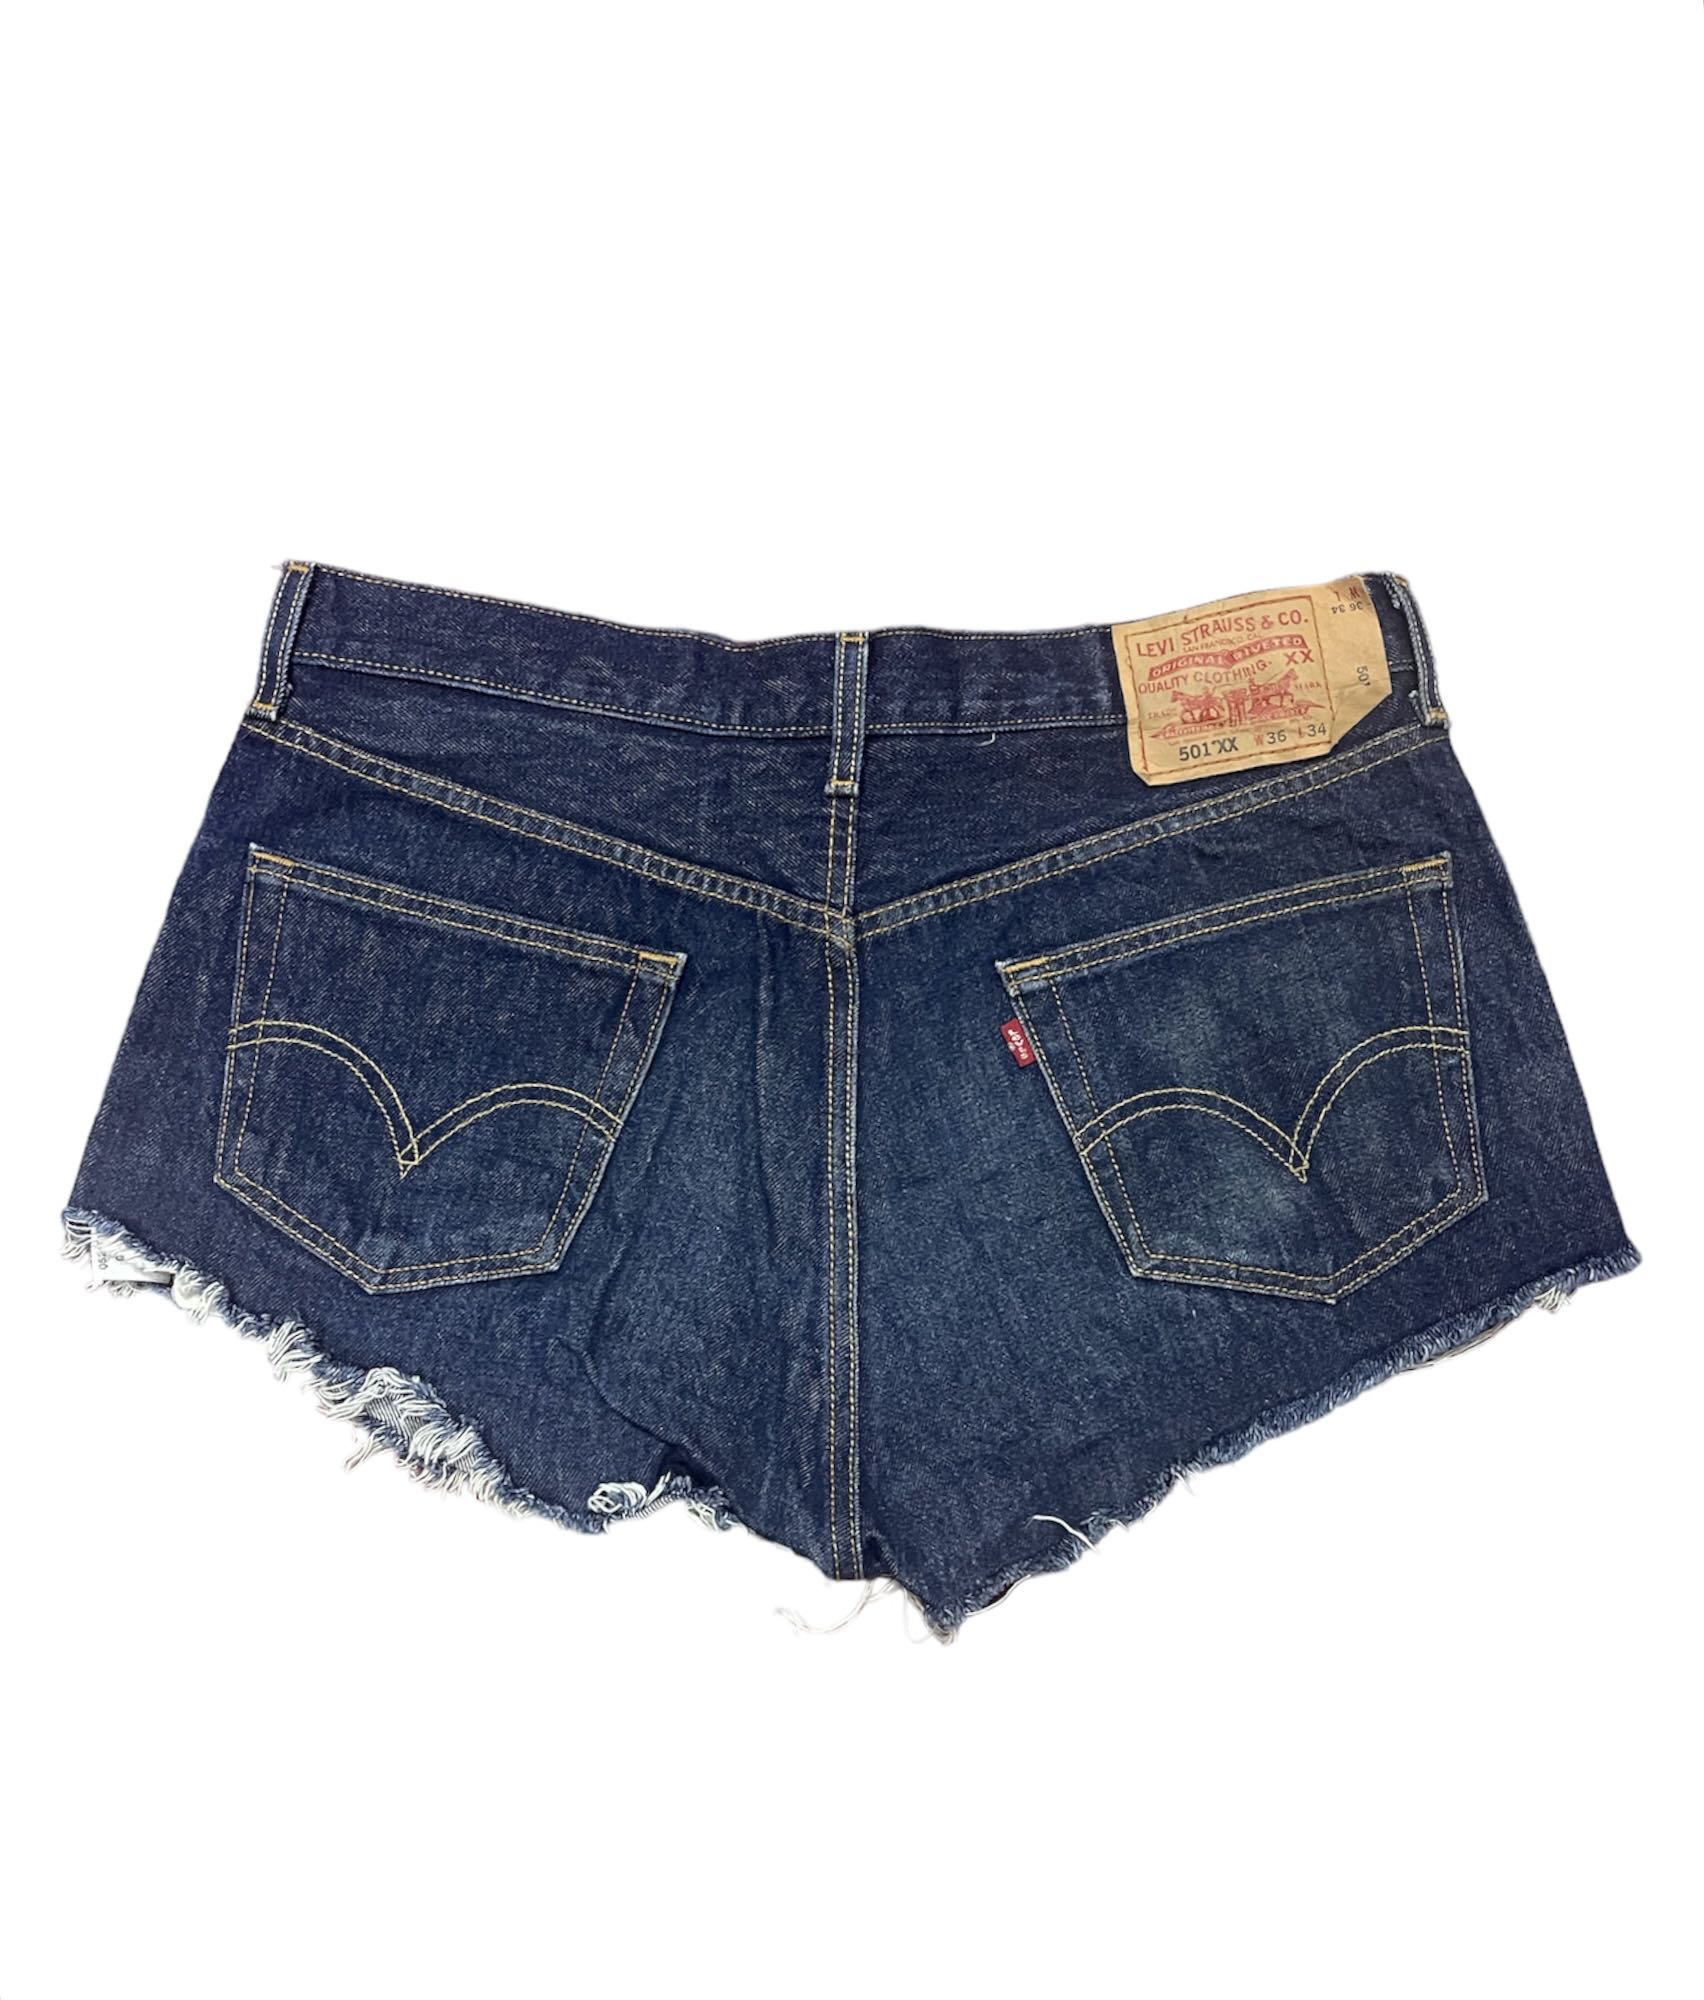 Vintage 90s 501 xx levis cropped jeans  - 2